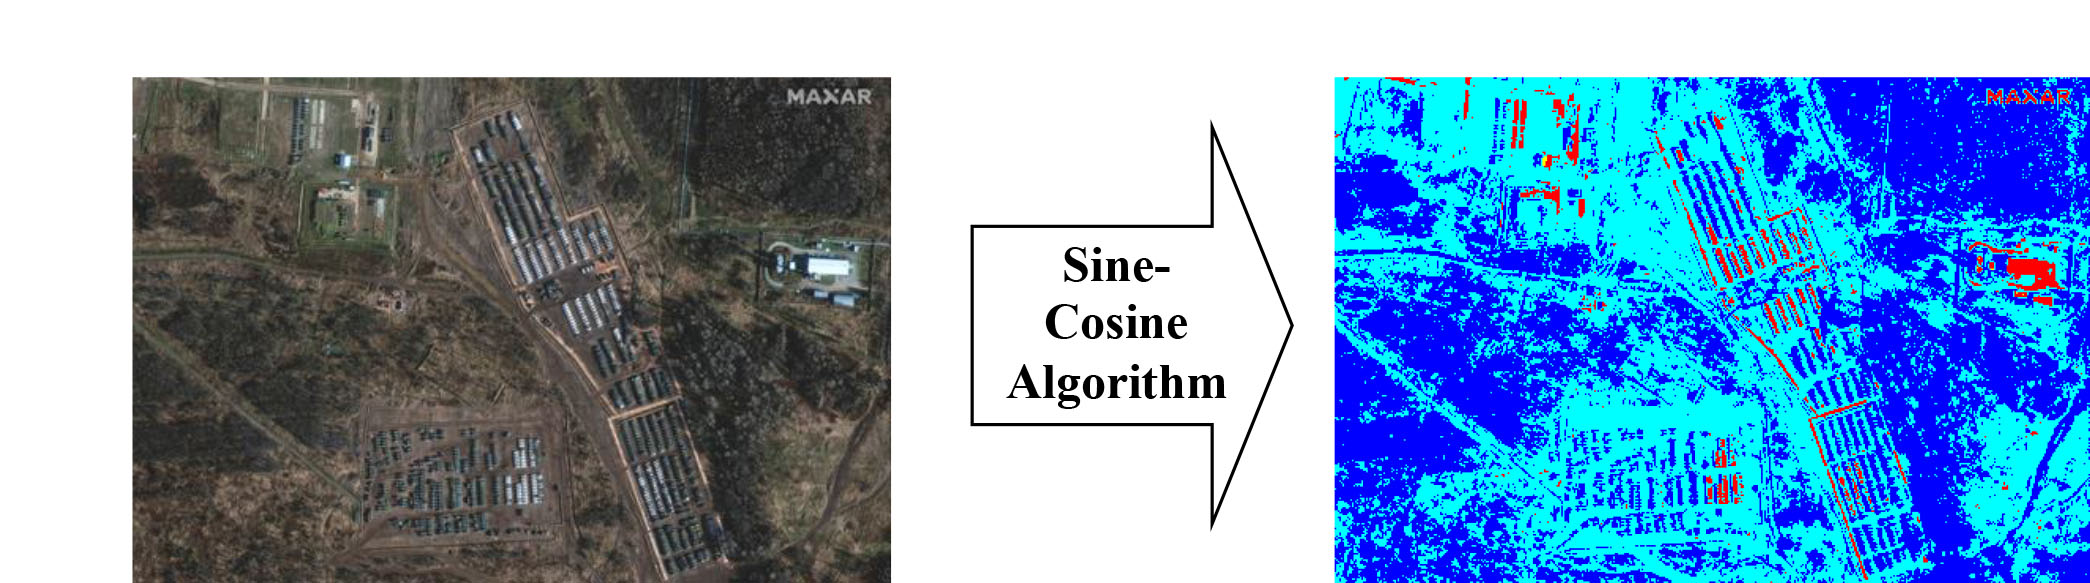 Розробка методу сегментування зображень з космічних оптико-електронних систем спостереження на основі Sine-Cosine алгоритму